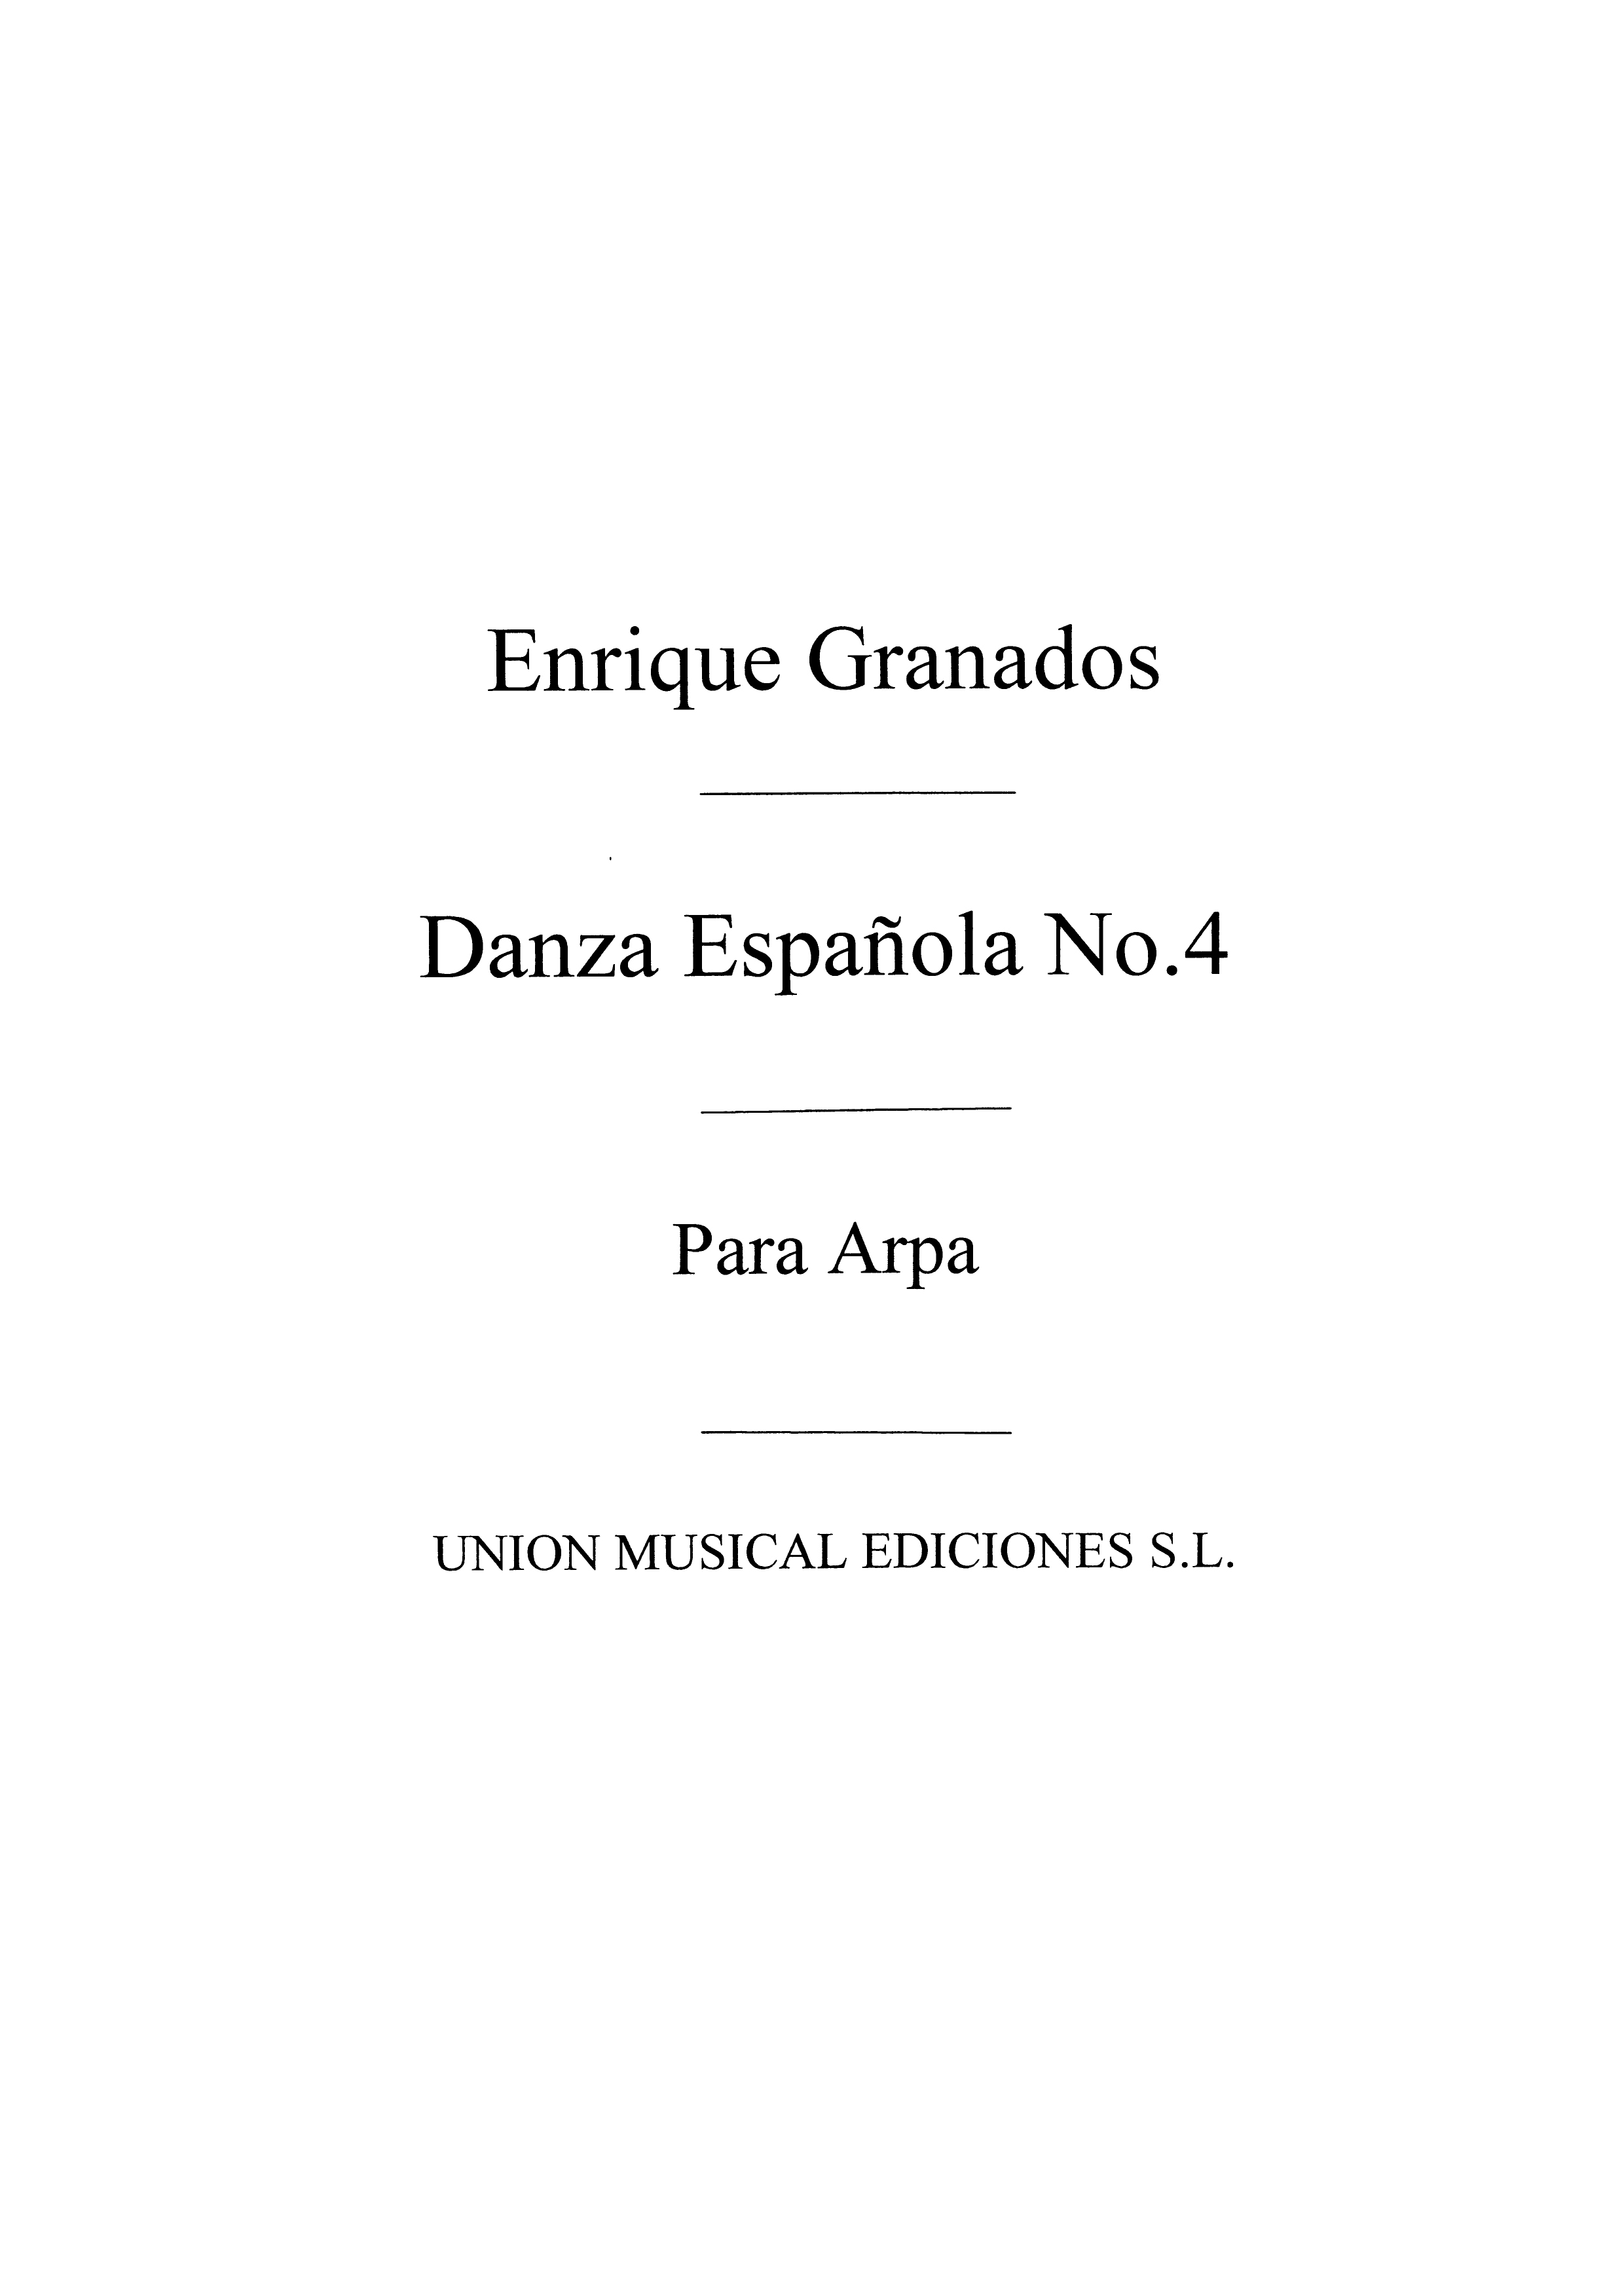 Enrique Granados: Danza Espanola No.4 Villanesca: Harp: Instrumental Album